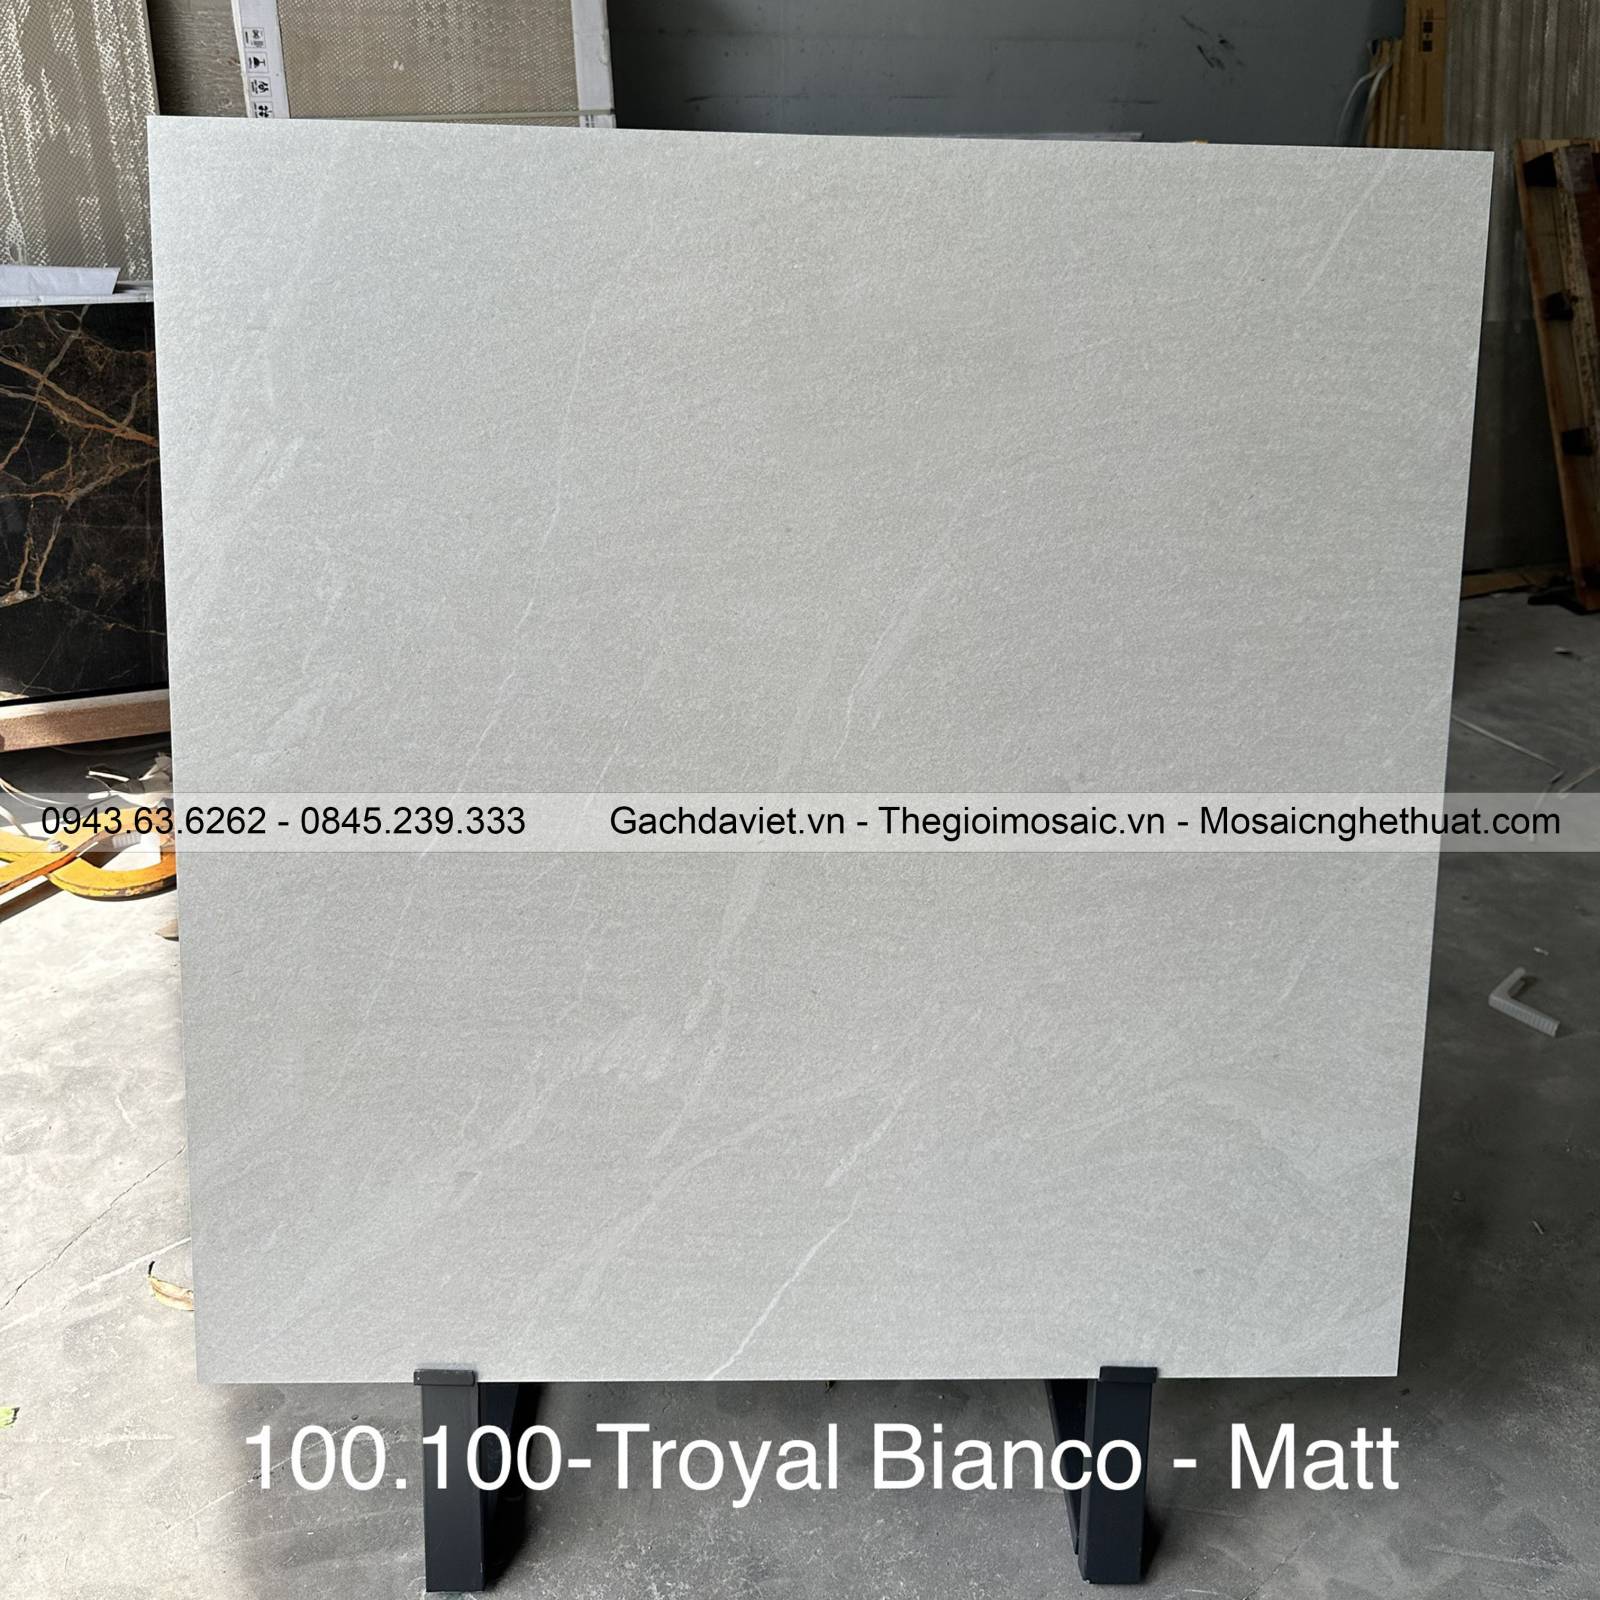 Gạch Ấn Độ nhập khẩu KT 100x100cm V-BA100-Troyal Bianco Matt